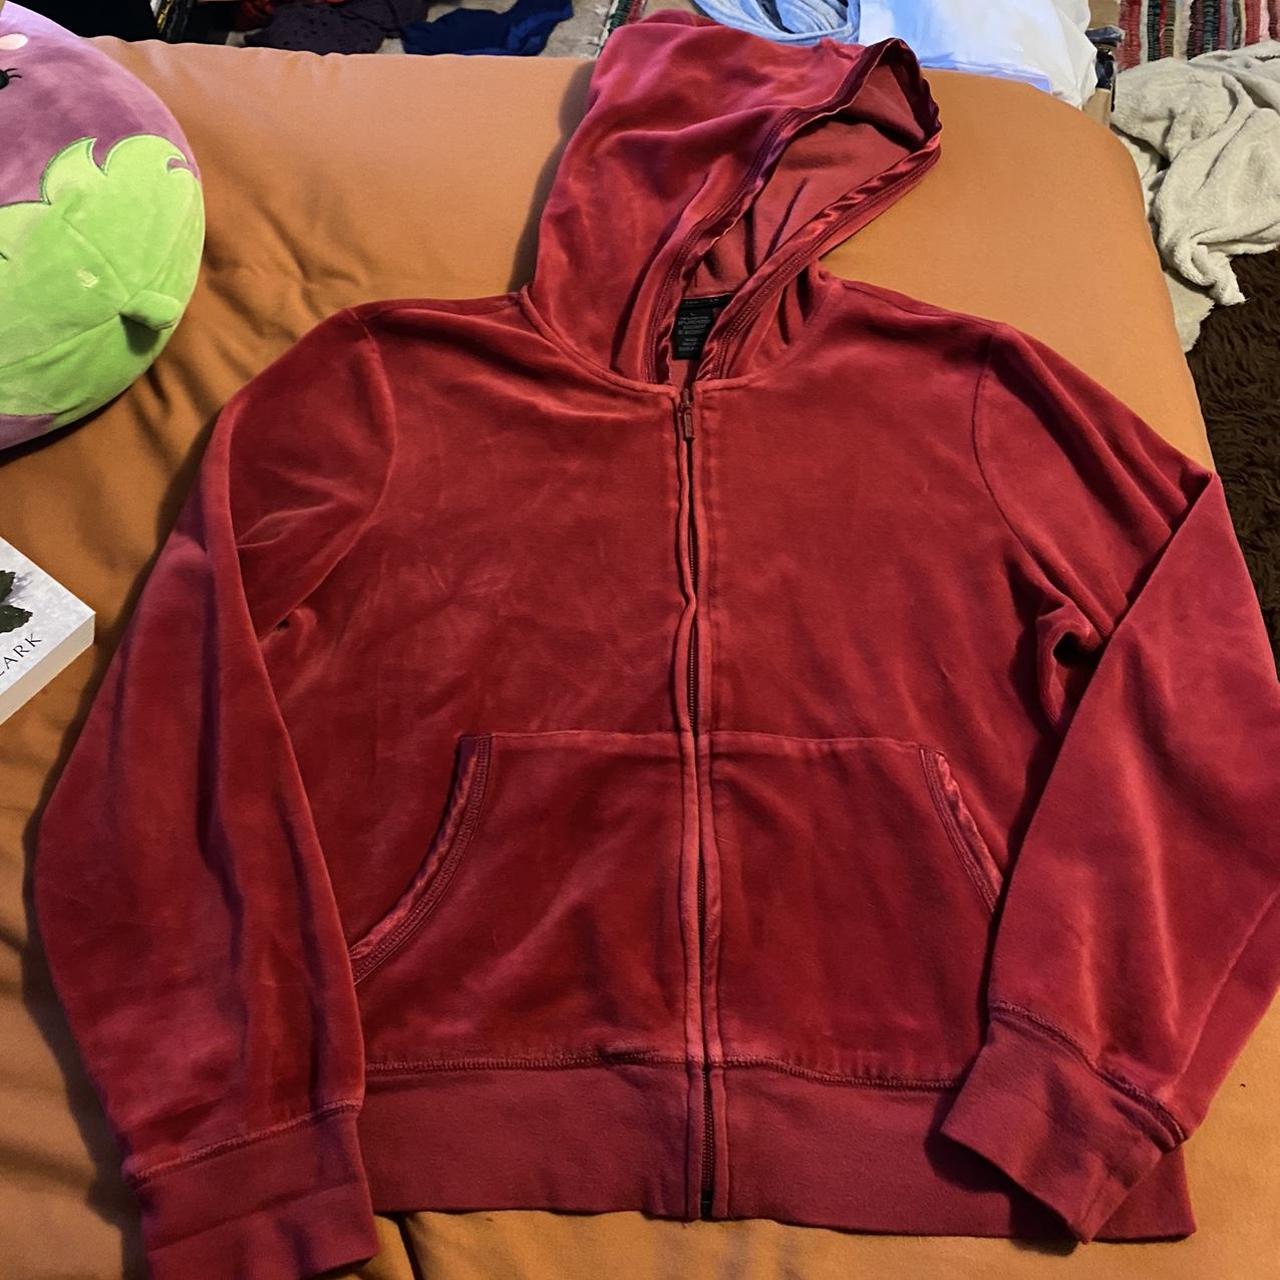 red vintage velvet zip up jacket/hoodie from The... - Depop